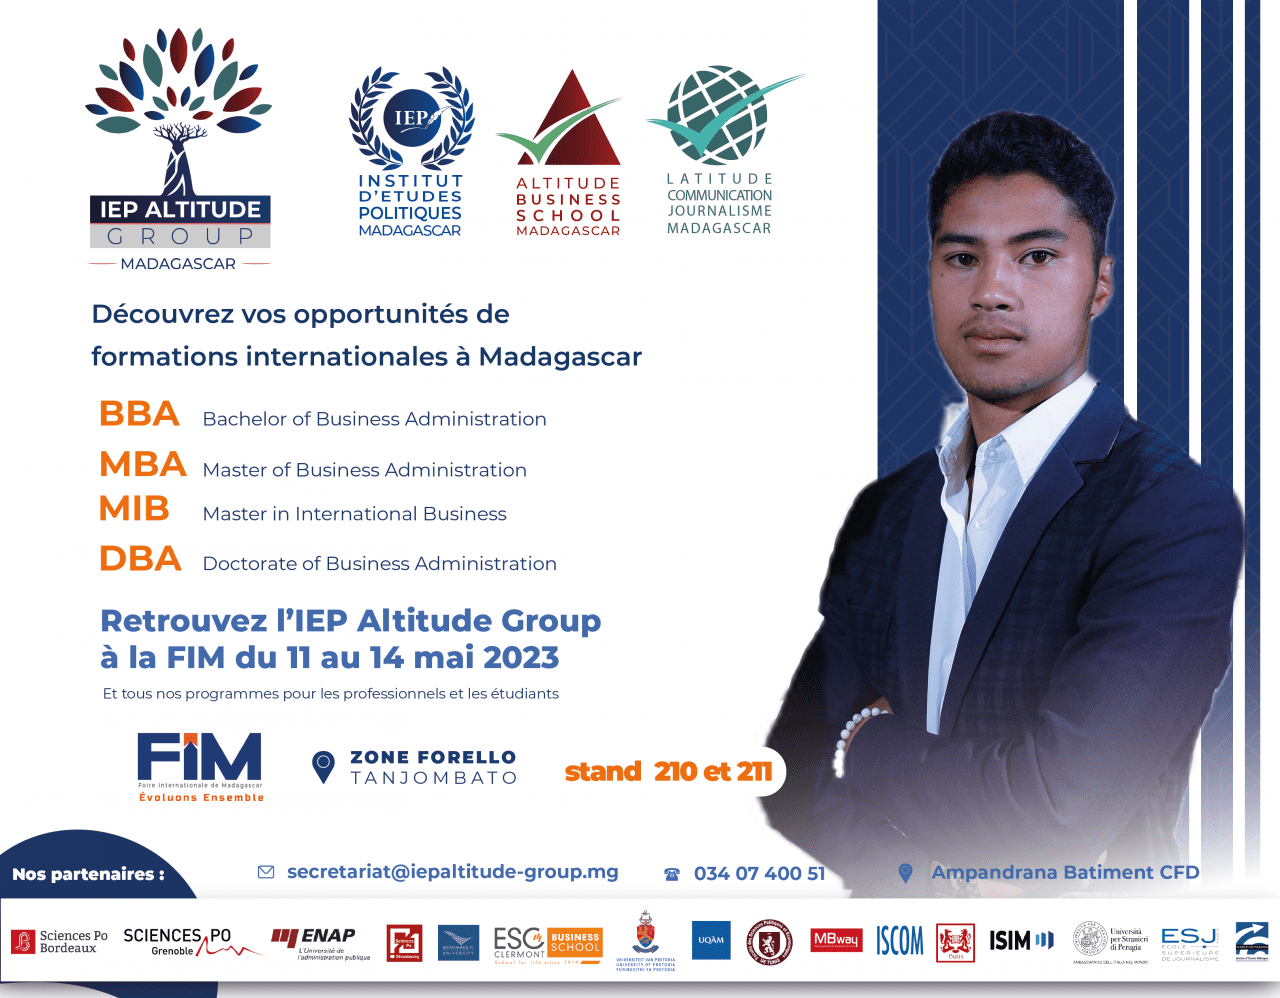 FIM IEP Altitude Group Madagascar